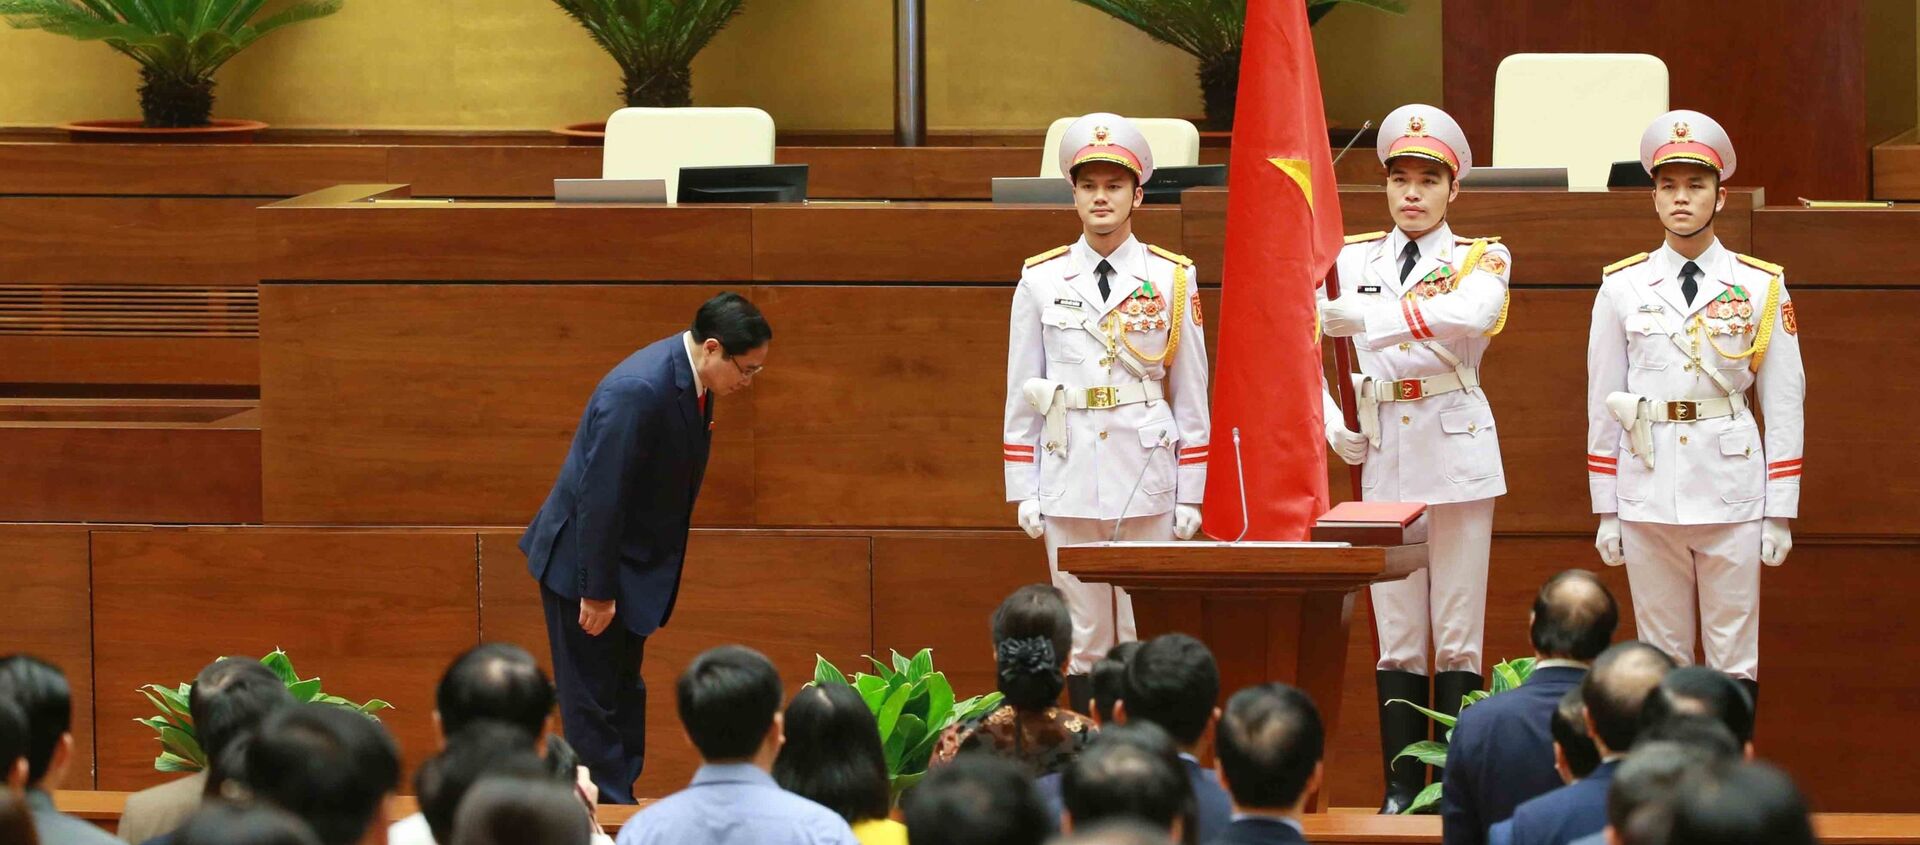 Thủ tướng Chính phủ Phạm Minh Chính chào Quốc kỳ tại lễ tuyên thệ nhậm chức. - Sputnik Việt Nam, 1920, 06.04.2021